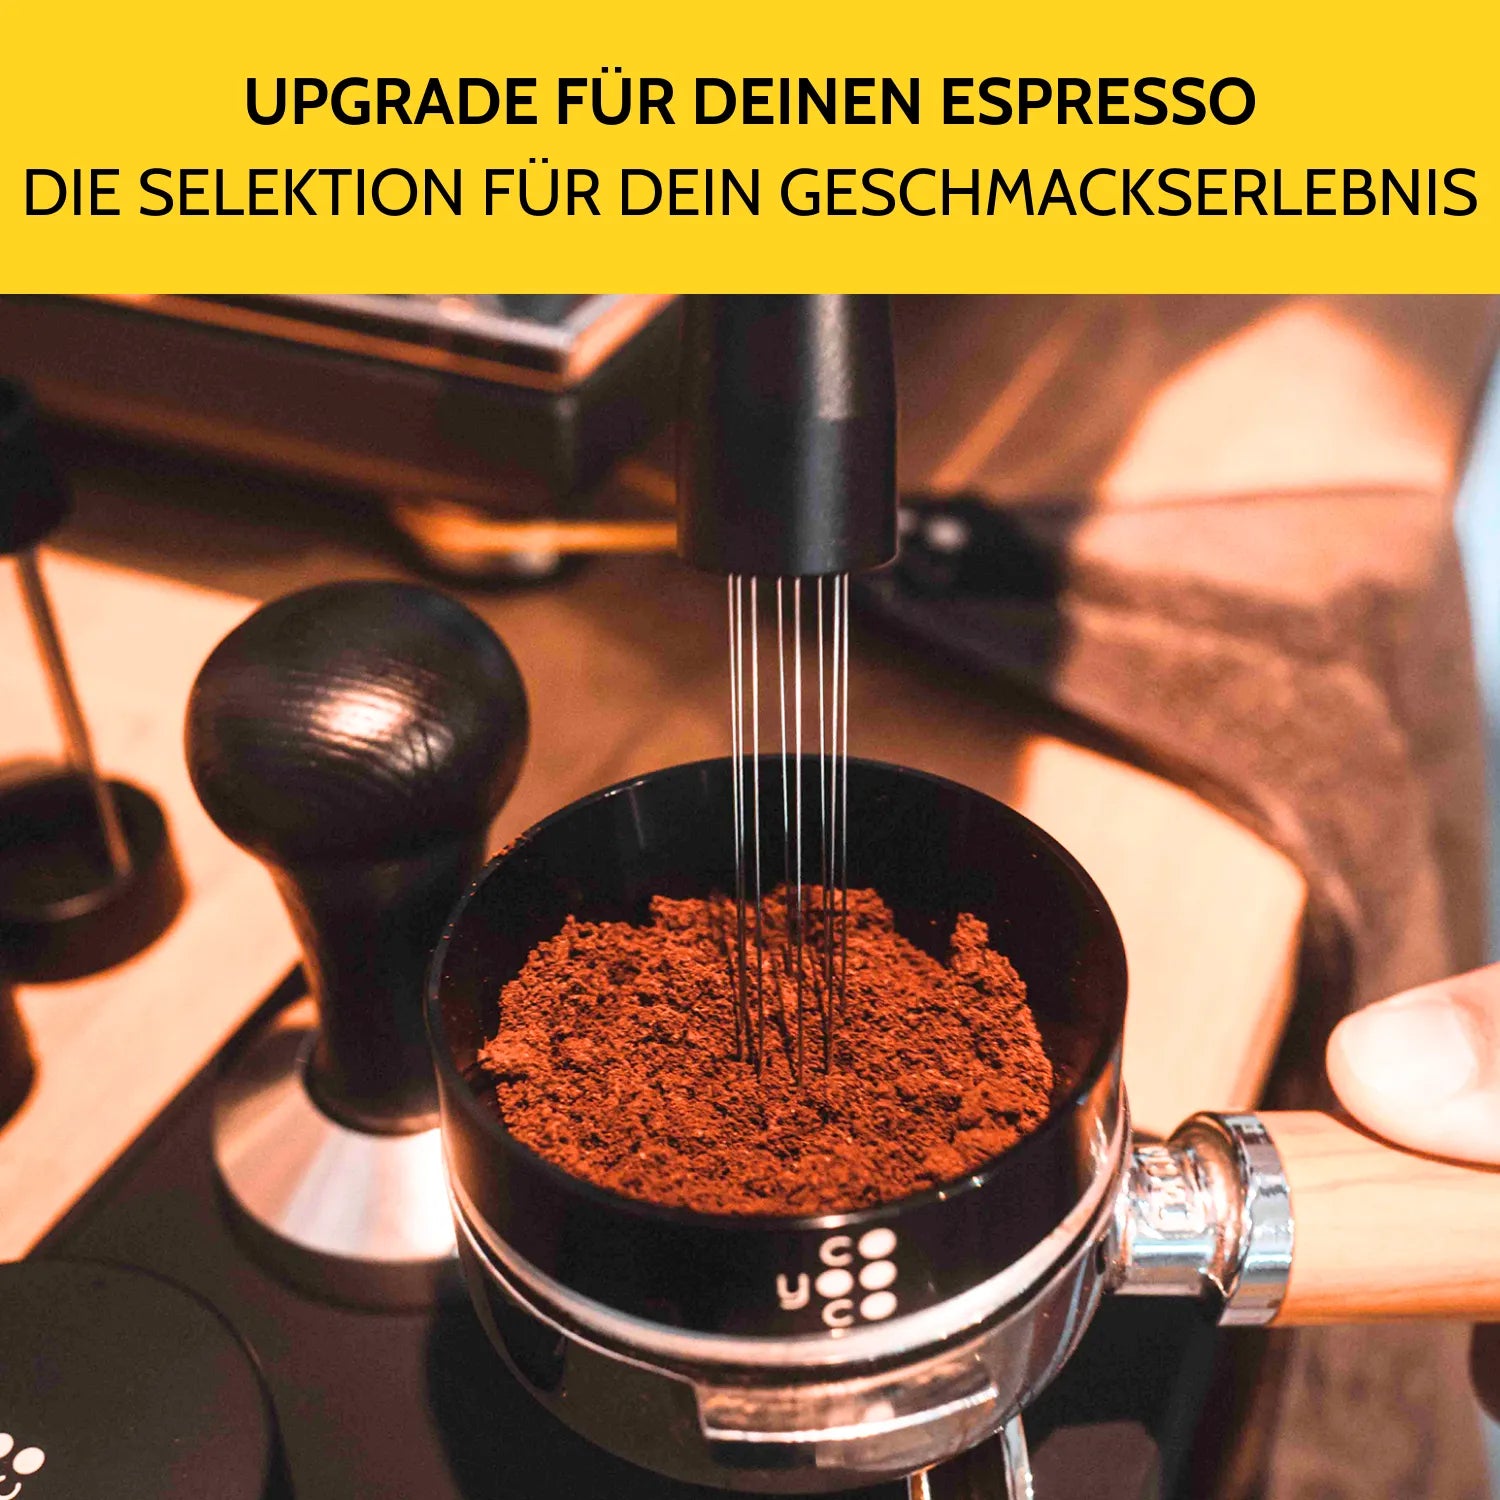 Mit dem WDT-Tool werden Kaffeeklumpen im Siebträger gelockert.